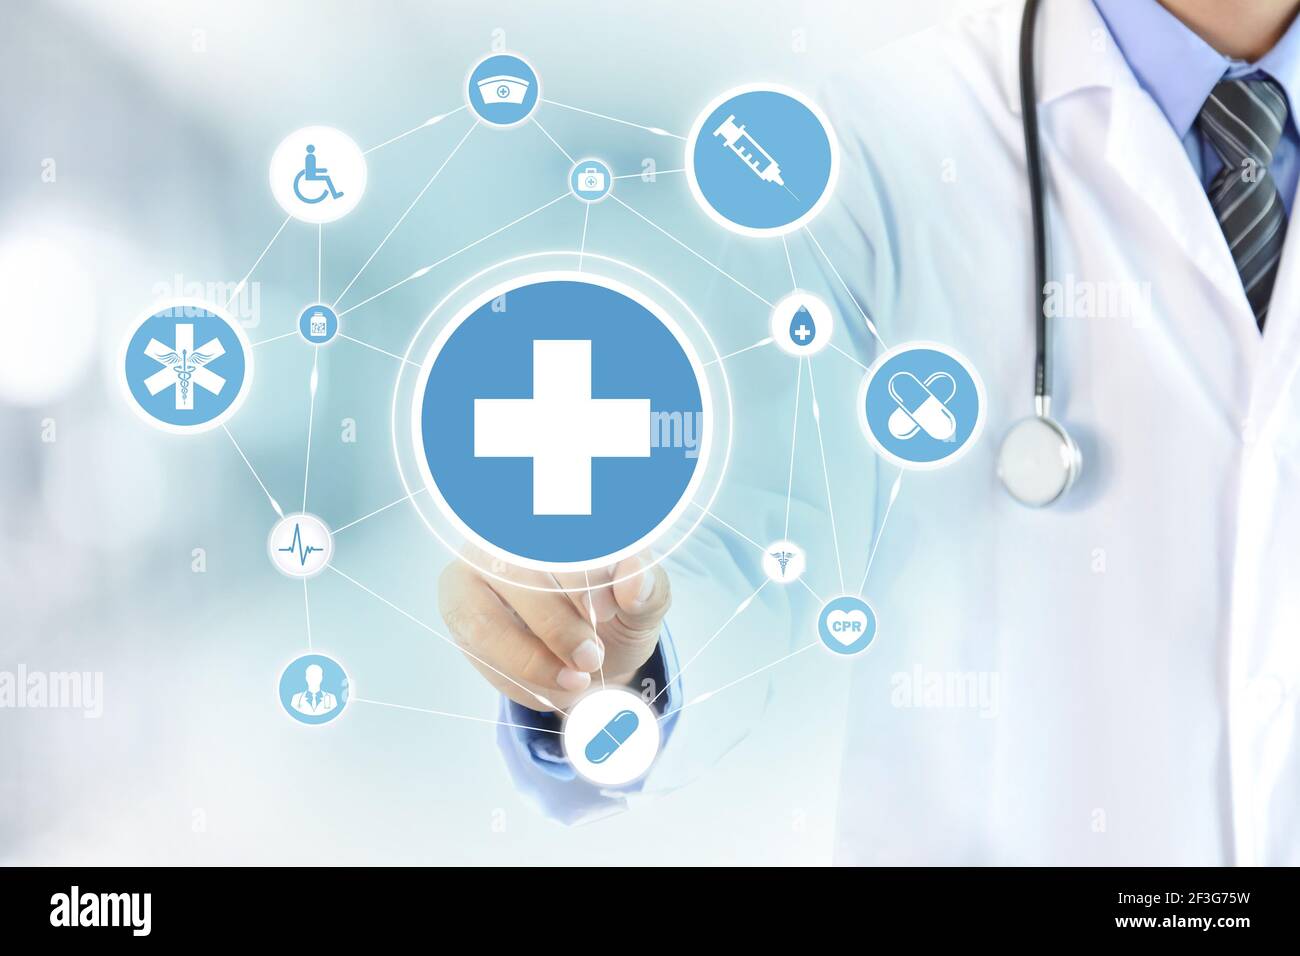 Arzt Hand berührt erste Hilfe Zeichen auf dem virtuellen Bildschirm - Gesundheitswesen und medizinische Konzepte Stockfoto